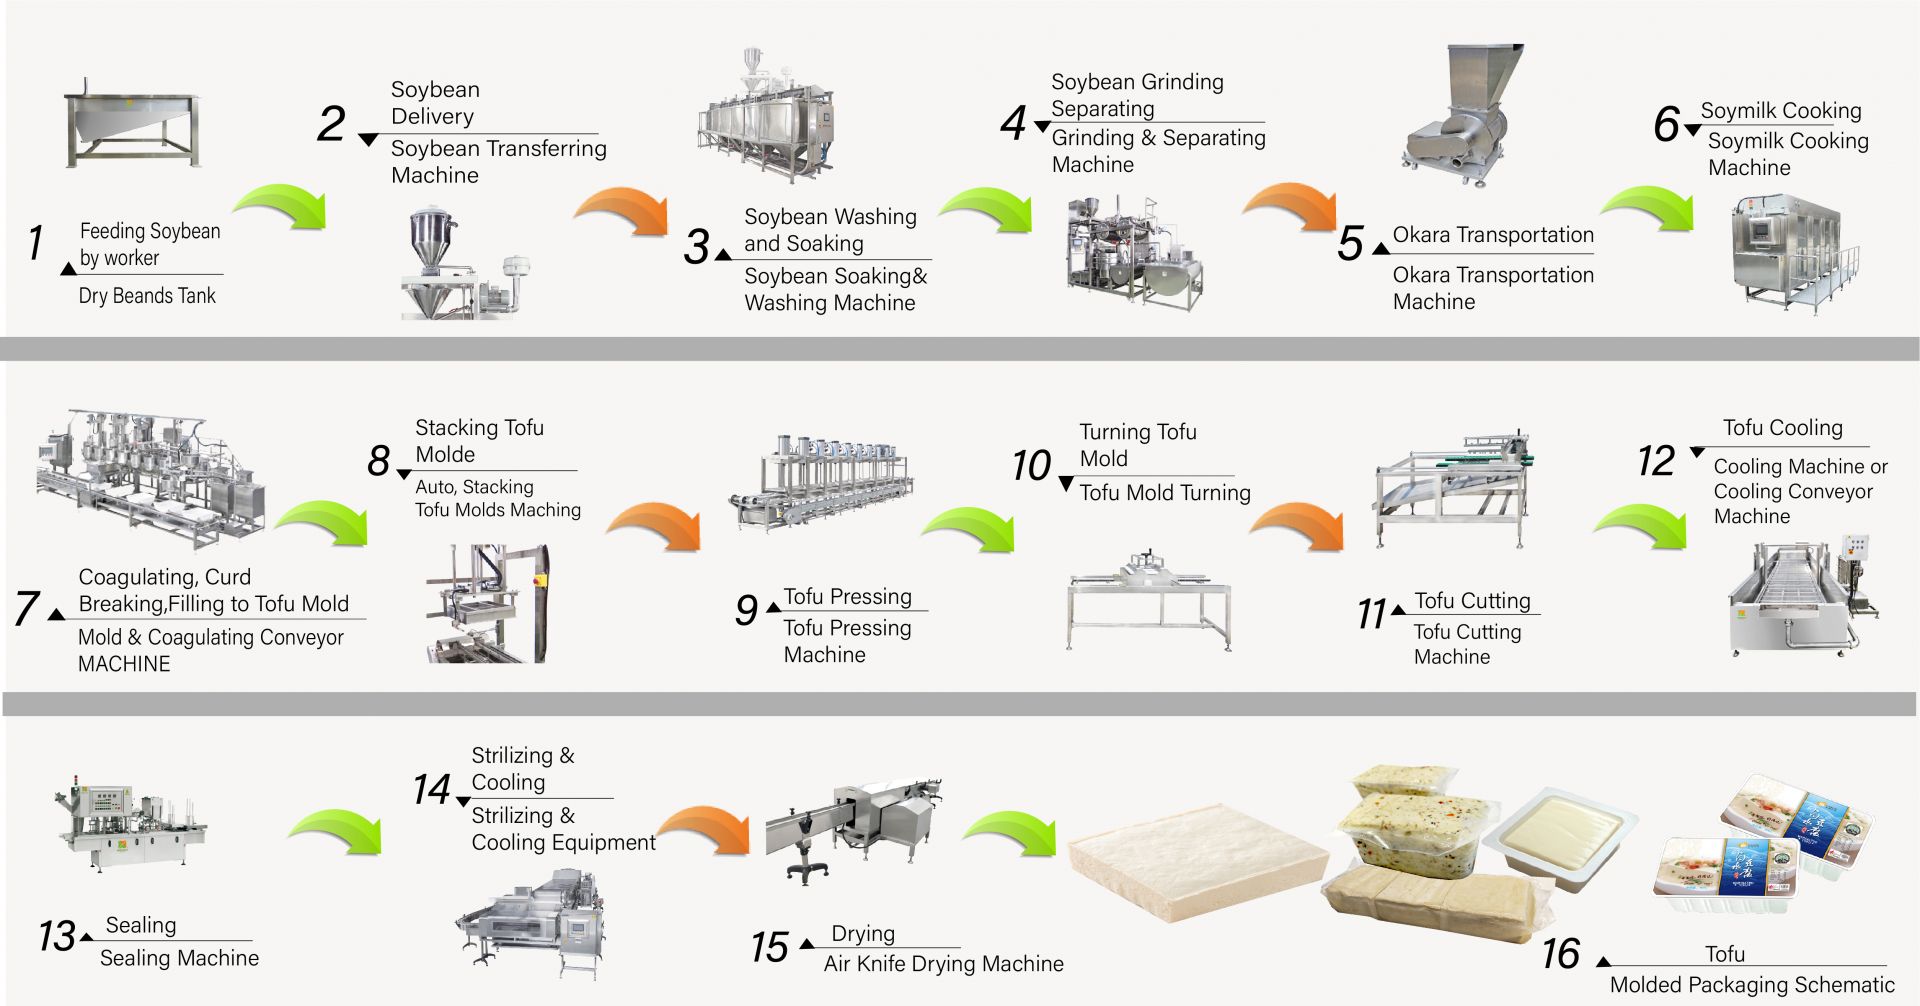 Jak zrobić tofu, produkcja tofu, Wytwarzanie tofu, Proces wytwarzania tofu, Produkcja tofu, Proces wytwarzania tofu, Proces tofu, Metoda przetwarzania tofu, Proces przetwarzania tofu, Produkcja tofu, schemat produkcji tofu, proces produkcji tofu, Proces produkcji tofu, automatyczna maszyna do produkcji tofu, Automatyczna maszyna do produkcji tofu, Komercyjna maszyna do produkcji tofu, Łatwy producent tofu, Maszyna do smażenia tofu, Przemysłowa produkcja tofu, Sprzęt do produkcji soi, maszyna do mielenia soi, maszyna do produkcji mleka sojowego i tofu, wyposażenie do produkcji tofu, fabryka tofu, maszyna do produkcji tofu, maszyna do produkcji tofu na sprzedaż, producent maszyn do produkcji tofu, producent maszyn do produkcji tofu, cena maszyny do produkcji tofu, maszyny do produkcji tofu, Maszyny i urządzenia do produkcji tofu, producent tofu, maszyna do produkcji tofu, produkcja tofu, urządzenia do produkcji tofu, maszyna do produkcji tofu, cena maszyny do produkcji tofu, producenci tofu, produkcja tofu, urządzenia do produkcji tofu, Fabryka produkcji tofu, zakład produkcyjny tofu, Wyposażenie do produkcji tofu, Fabryka produkcji tofu, Linia produkcyjna tofu, Cena linii produkcyjnej tofu, maszyna do produkcji tofu, Maszyna do produkcji mięsa wegańskiego, Linia produkcyjna mięsa wegańskiego, Maszyny i urządzenia do produkcji warzywnego tofu